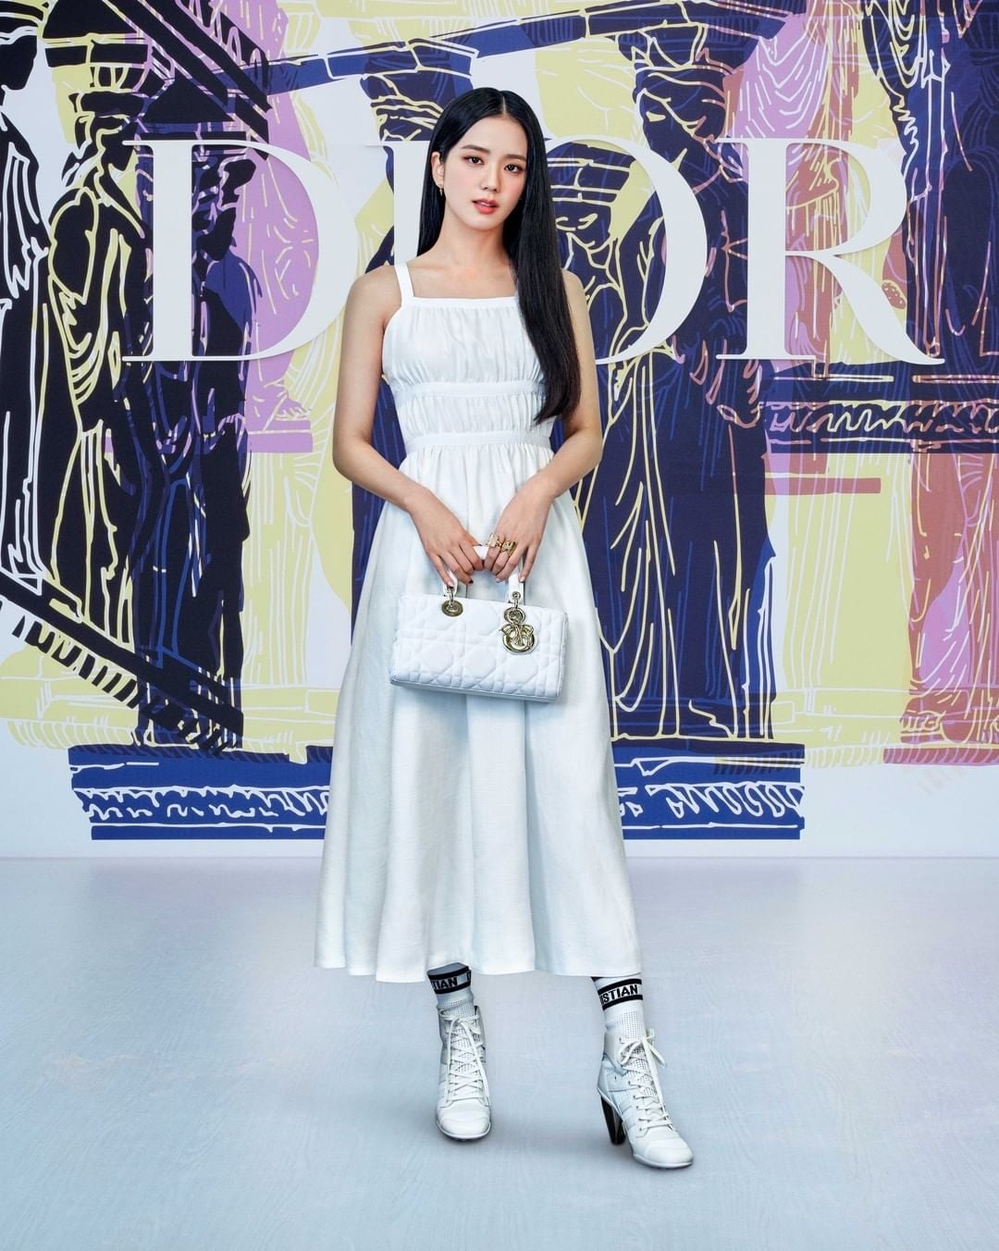 Jisoo khẳng định vị trí đại sứ của Dior với style thanh lịch